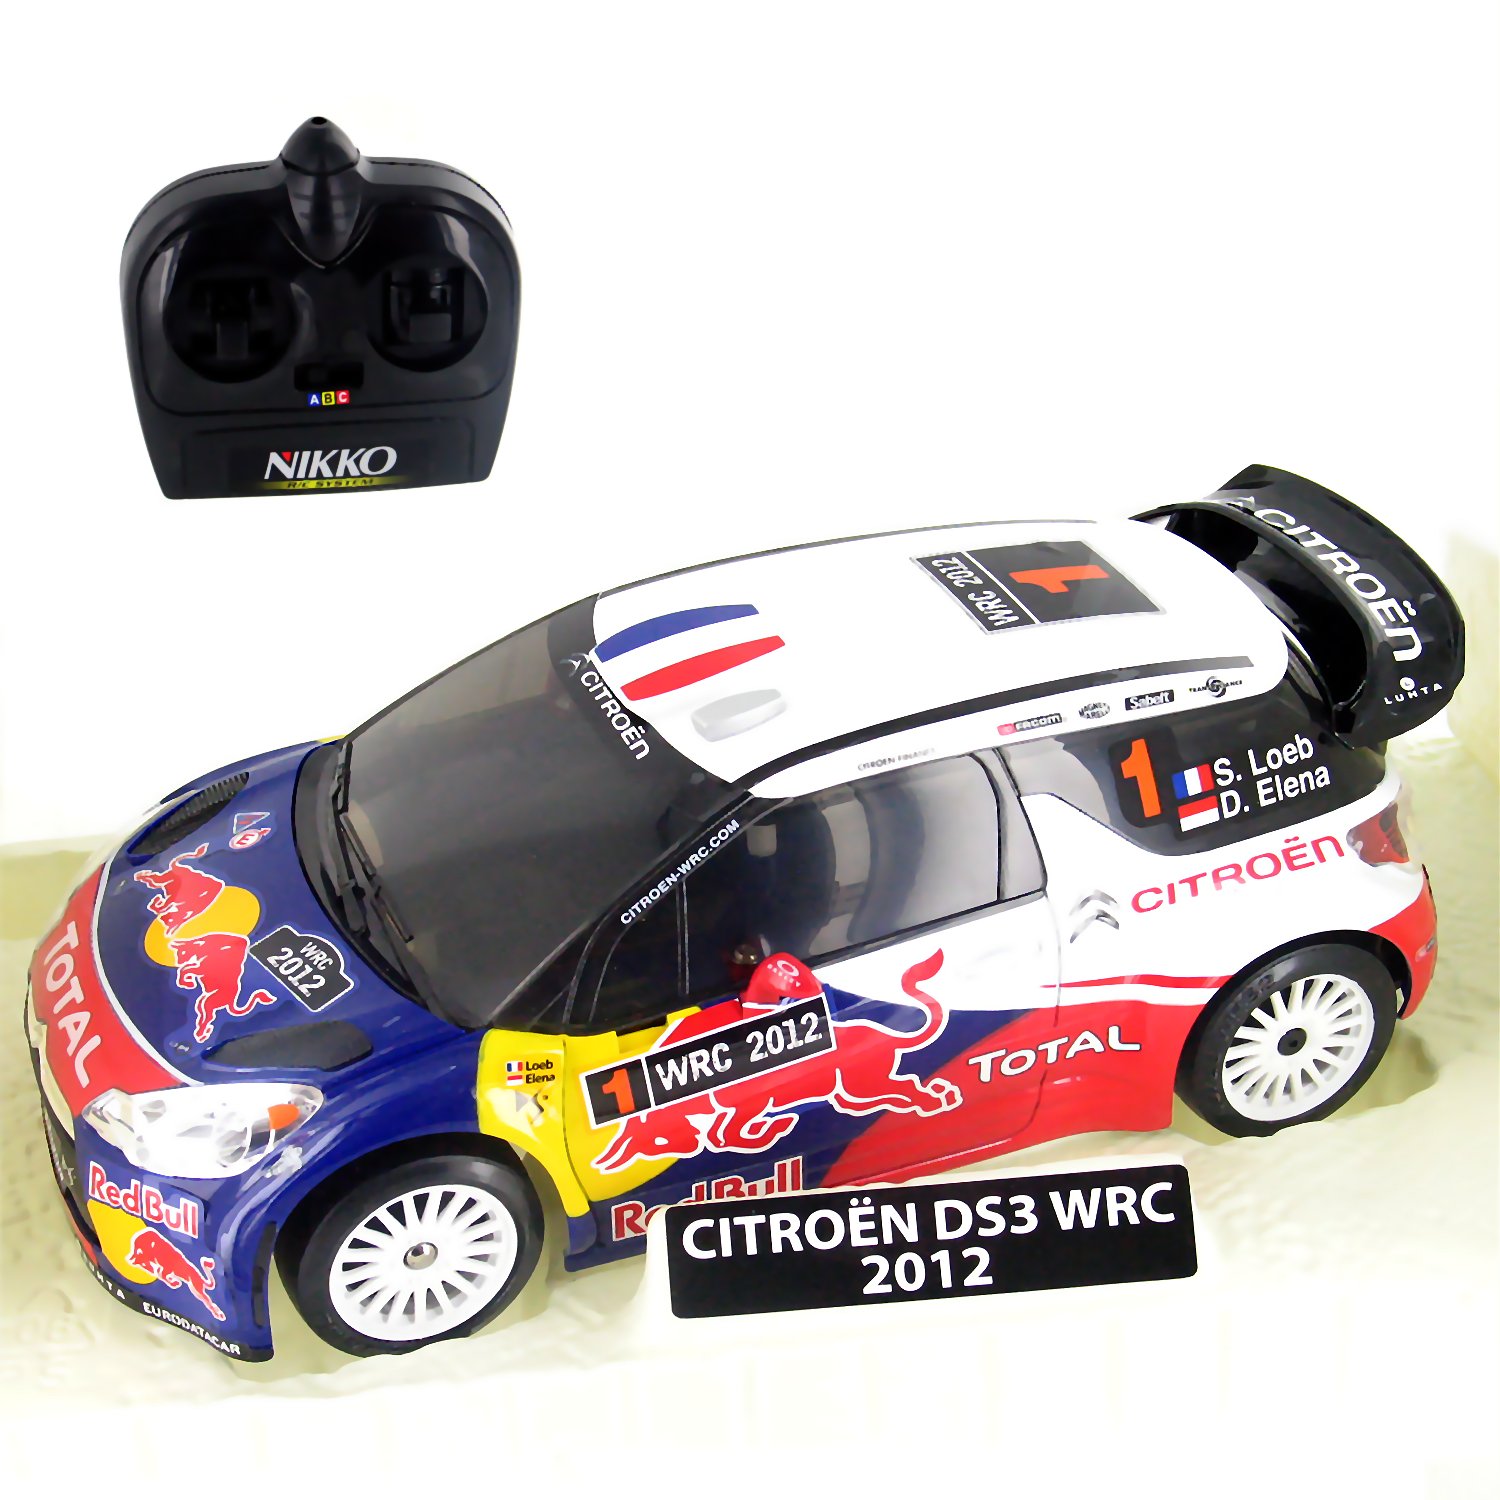 Citroën DS3 WRC Sébastien Loeb - 1/14e - Voiture radiocommandée